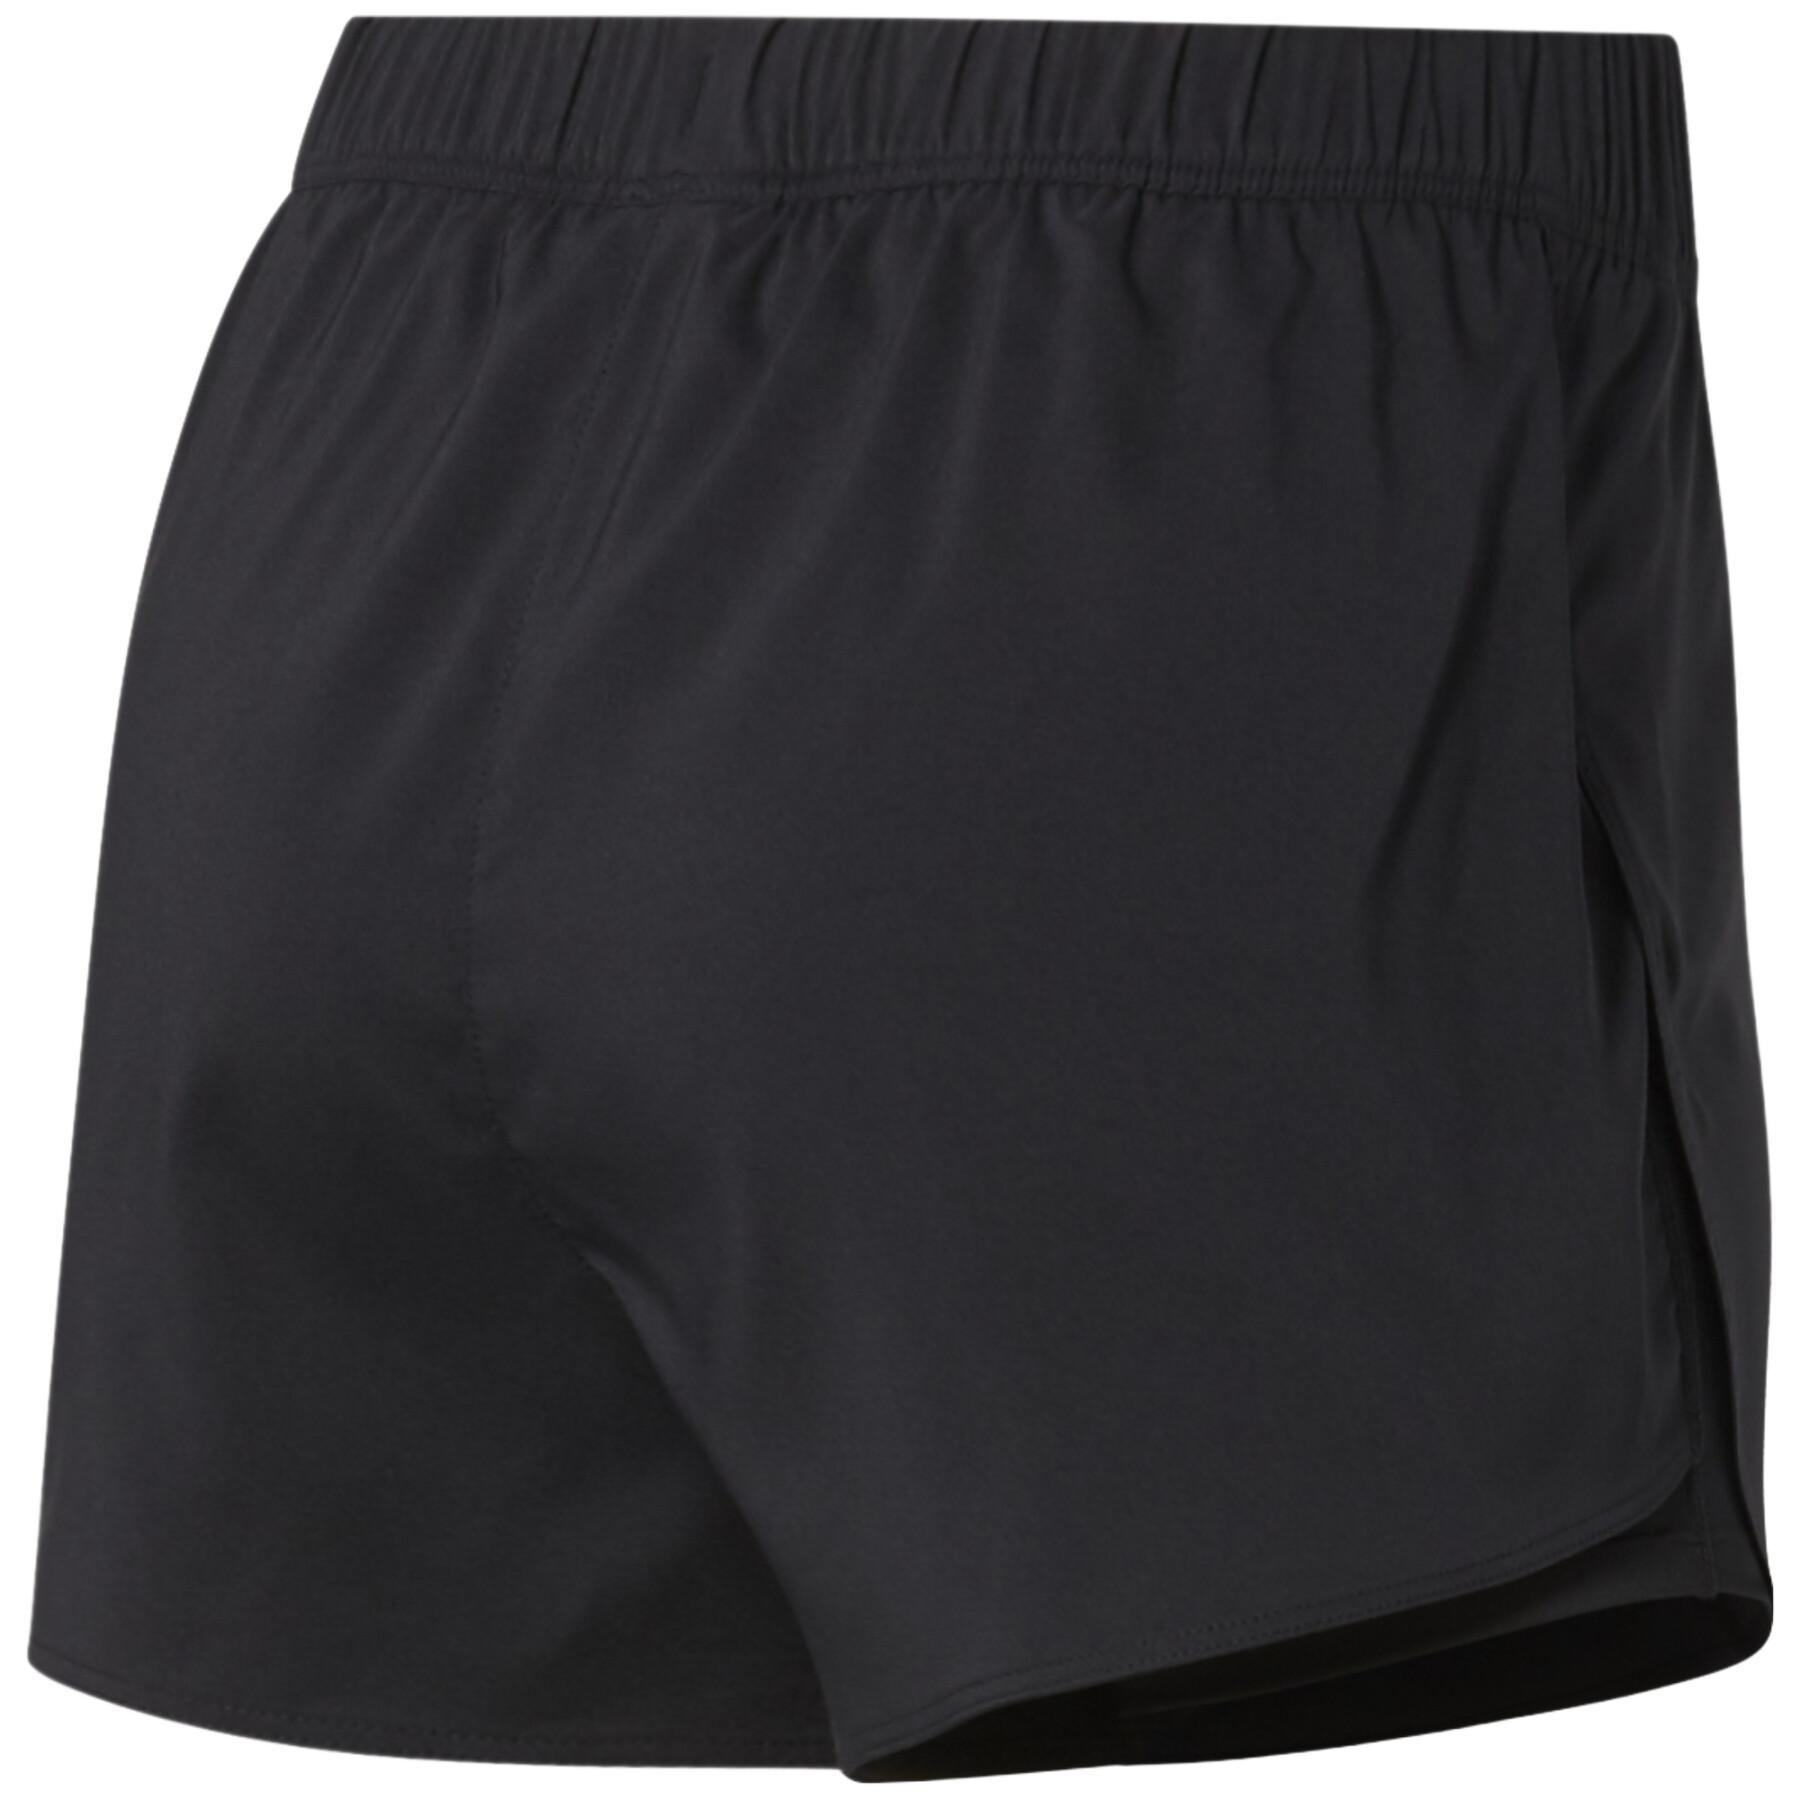 Damen-Shorts Reebok Running Essentials Two-in-One